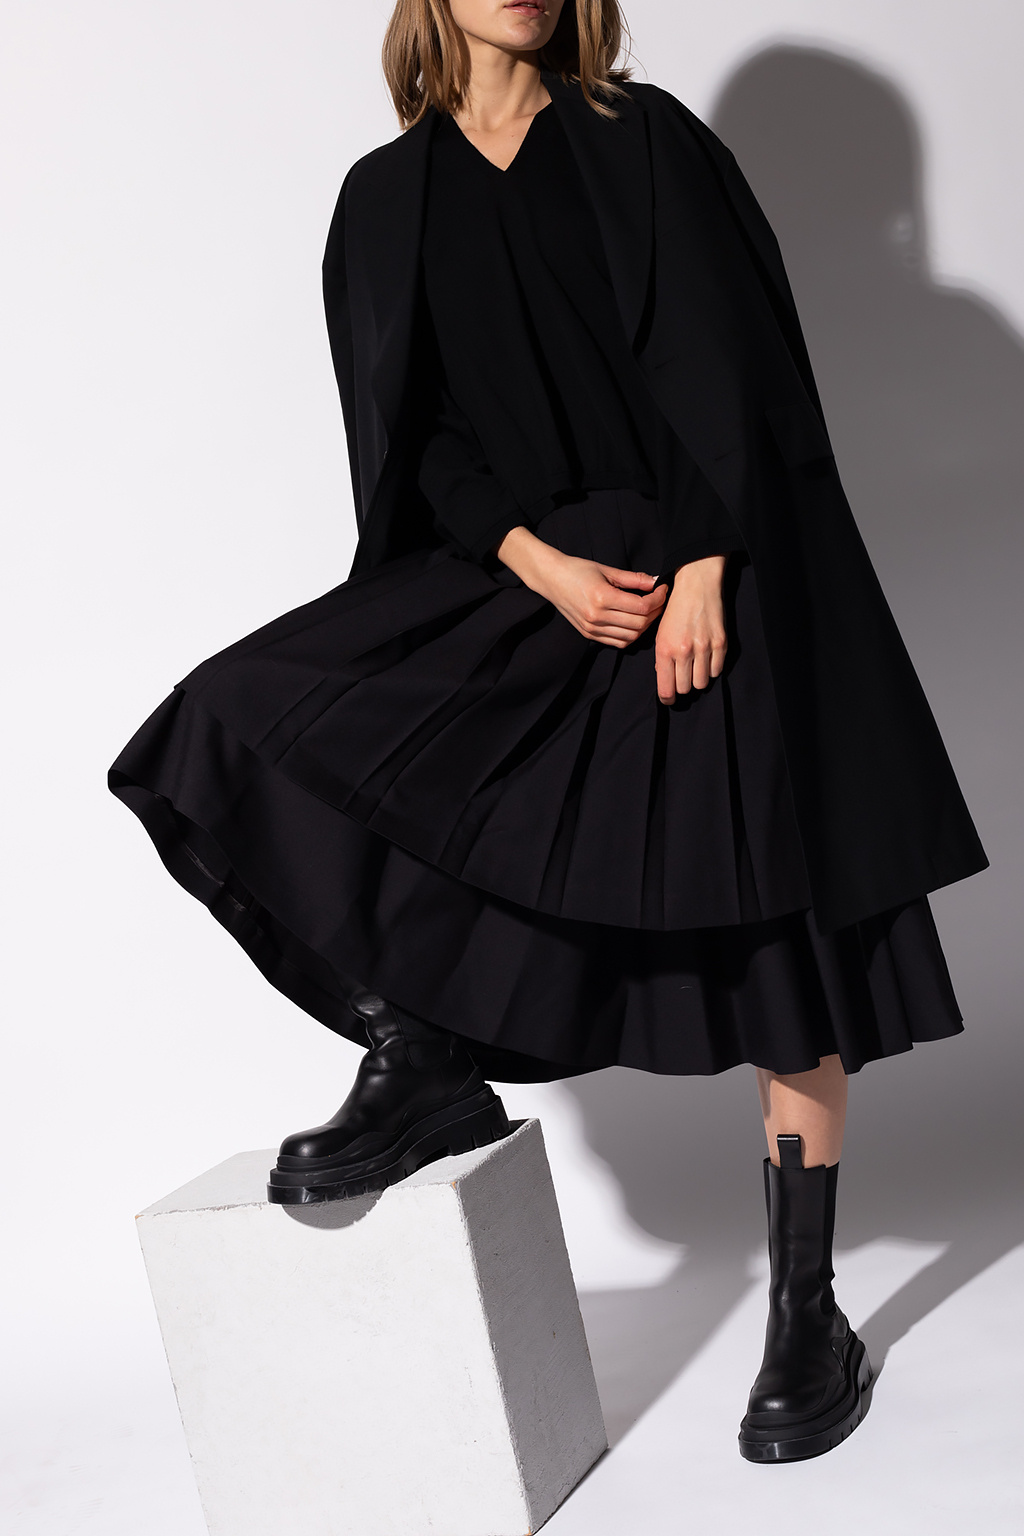 Comme des Garçons Noir Kei Ninomiya Double-layered skirt | Women's